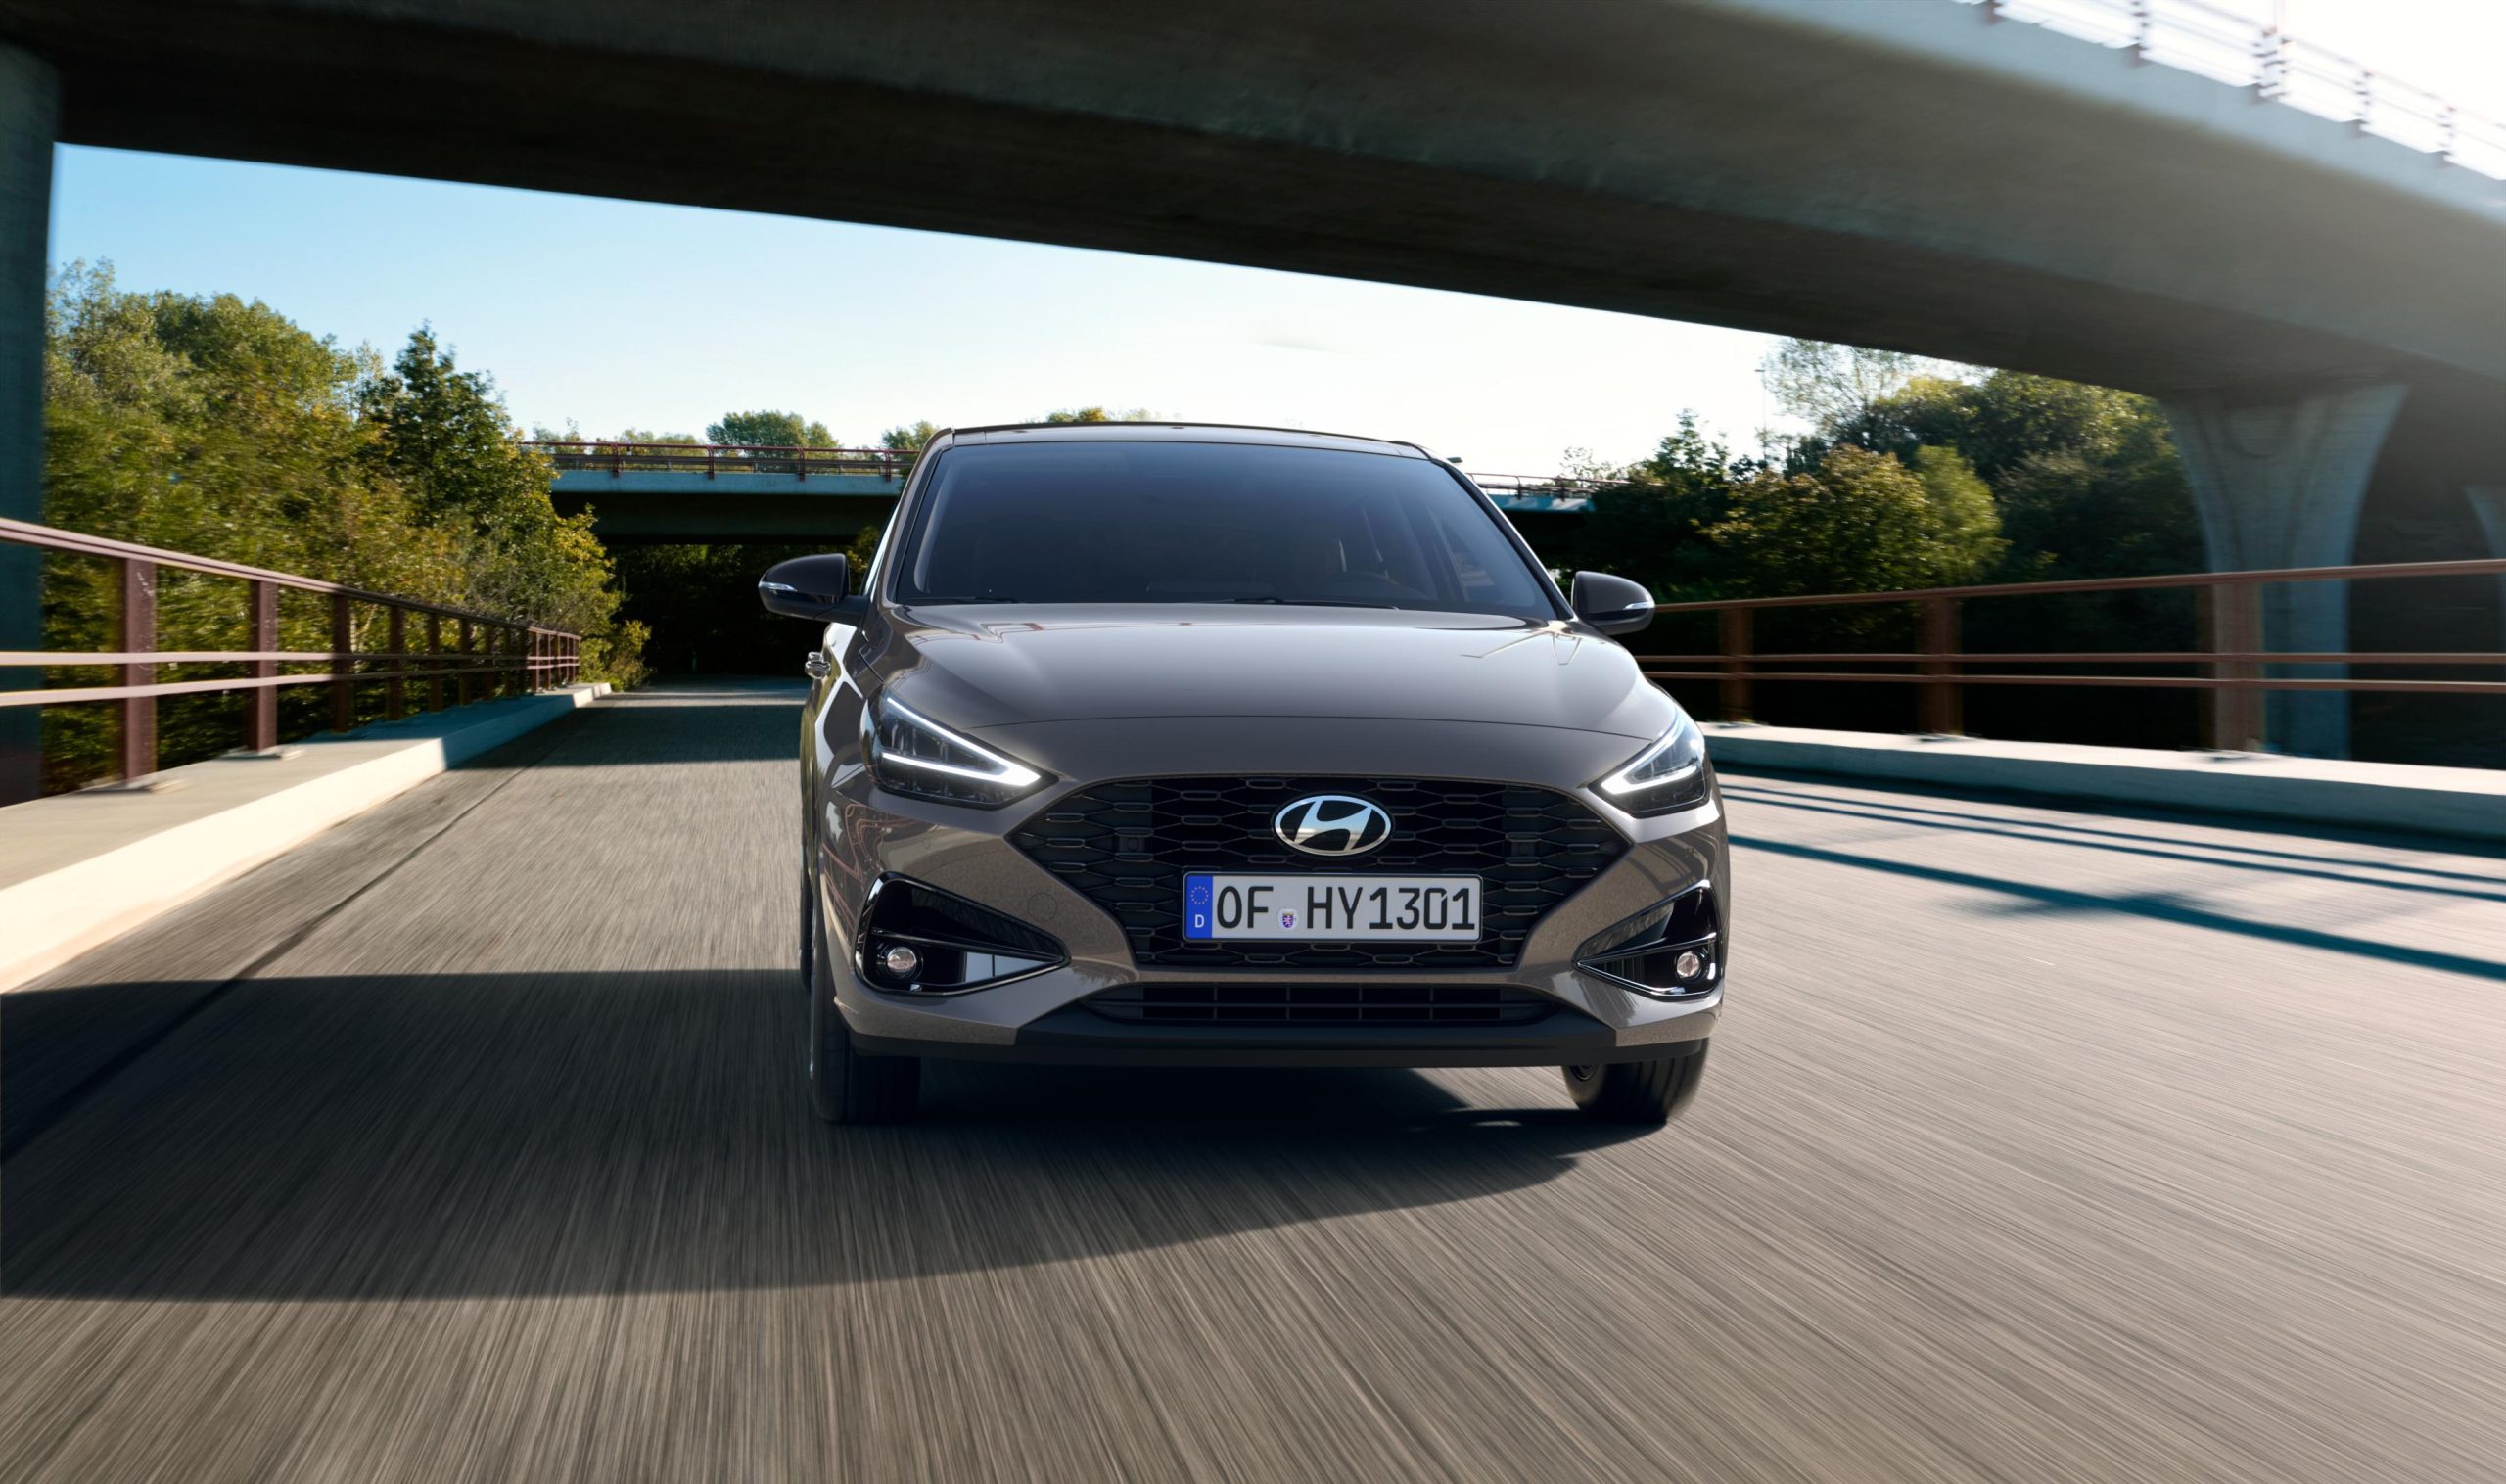 Νέο Hyundai i30: Αναβαθμισμένο στον ανταγωνισμό για ασφάλεια και συνδεσιμότητα
